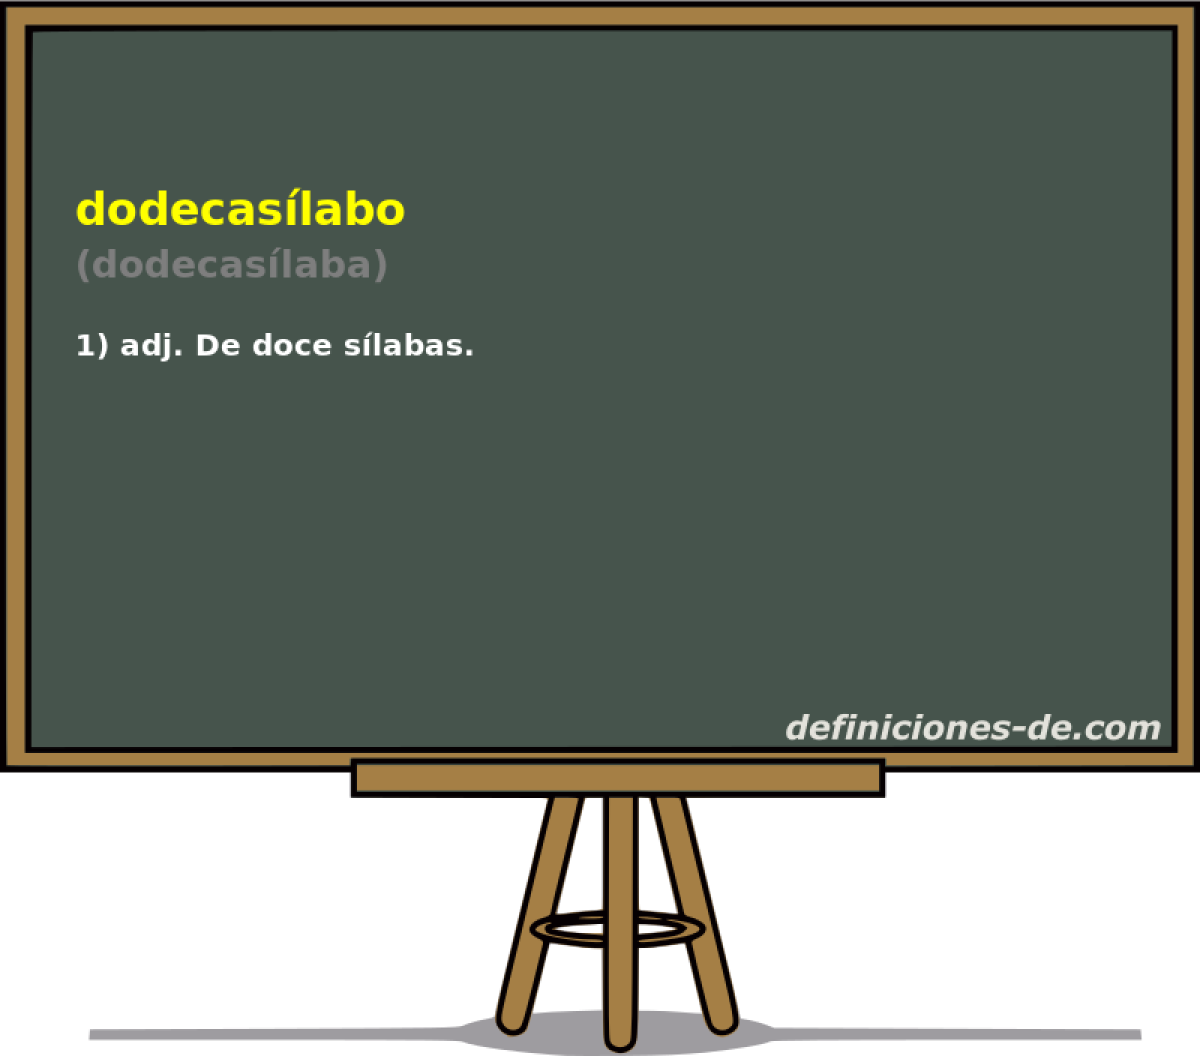 dodecaslabo (dodecaslaba)